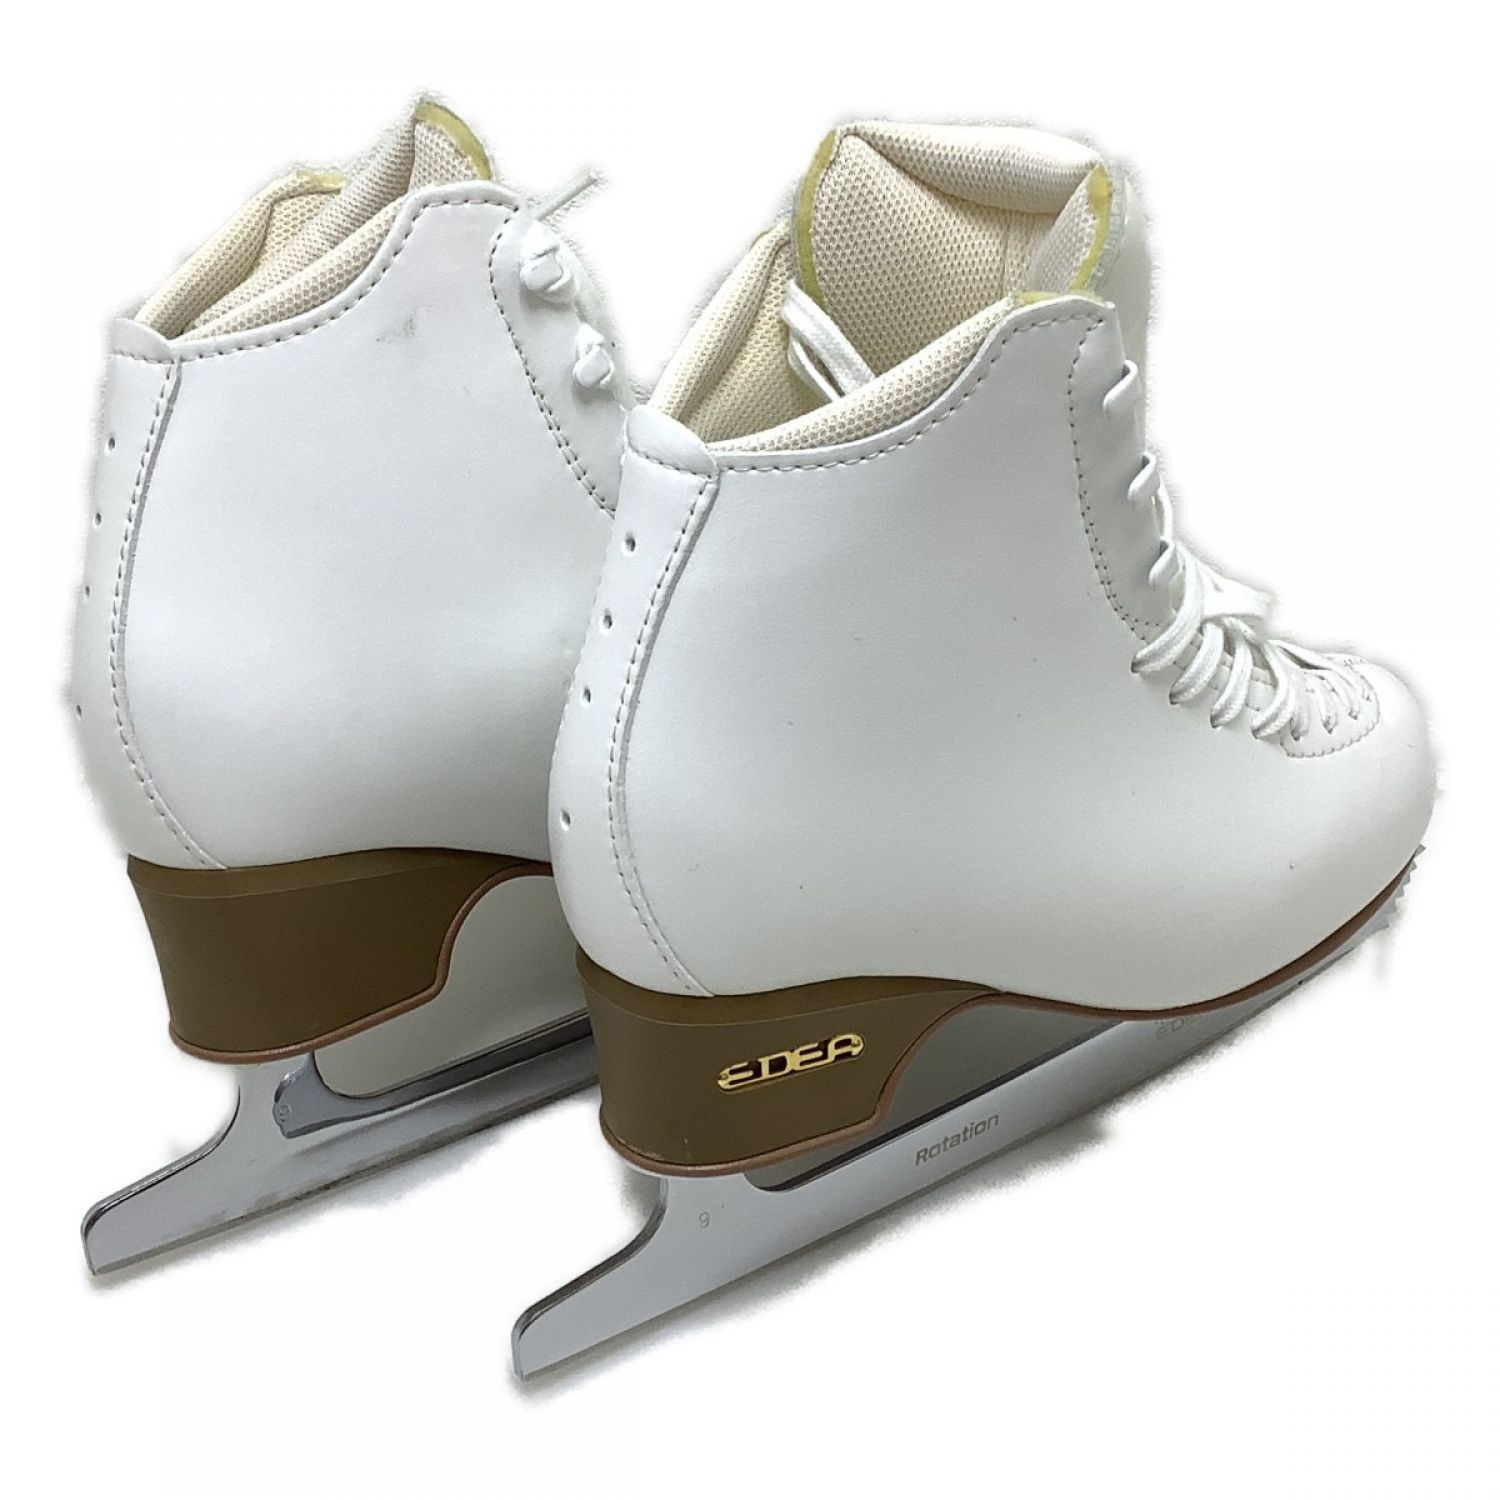 モティボ エデア フィギュアスケート靴(おまけ付き) 24.5cm